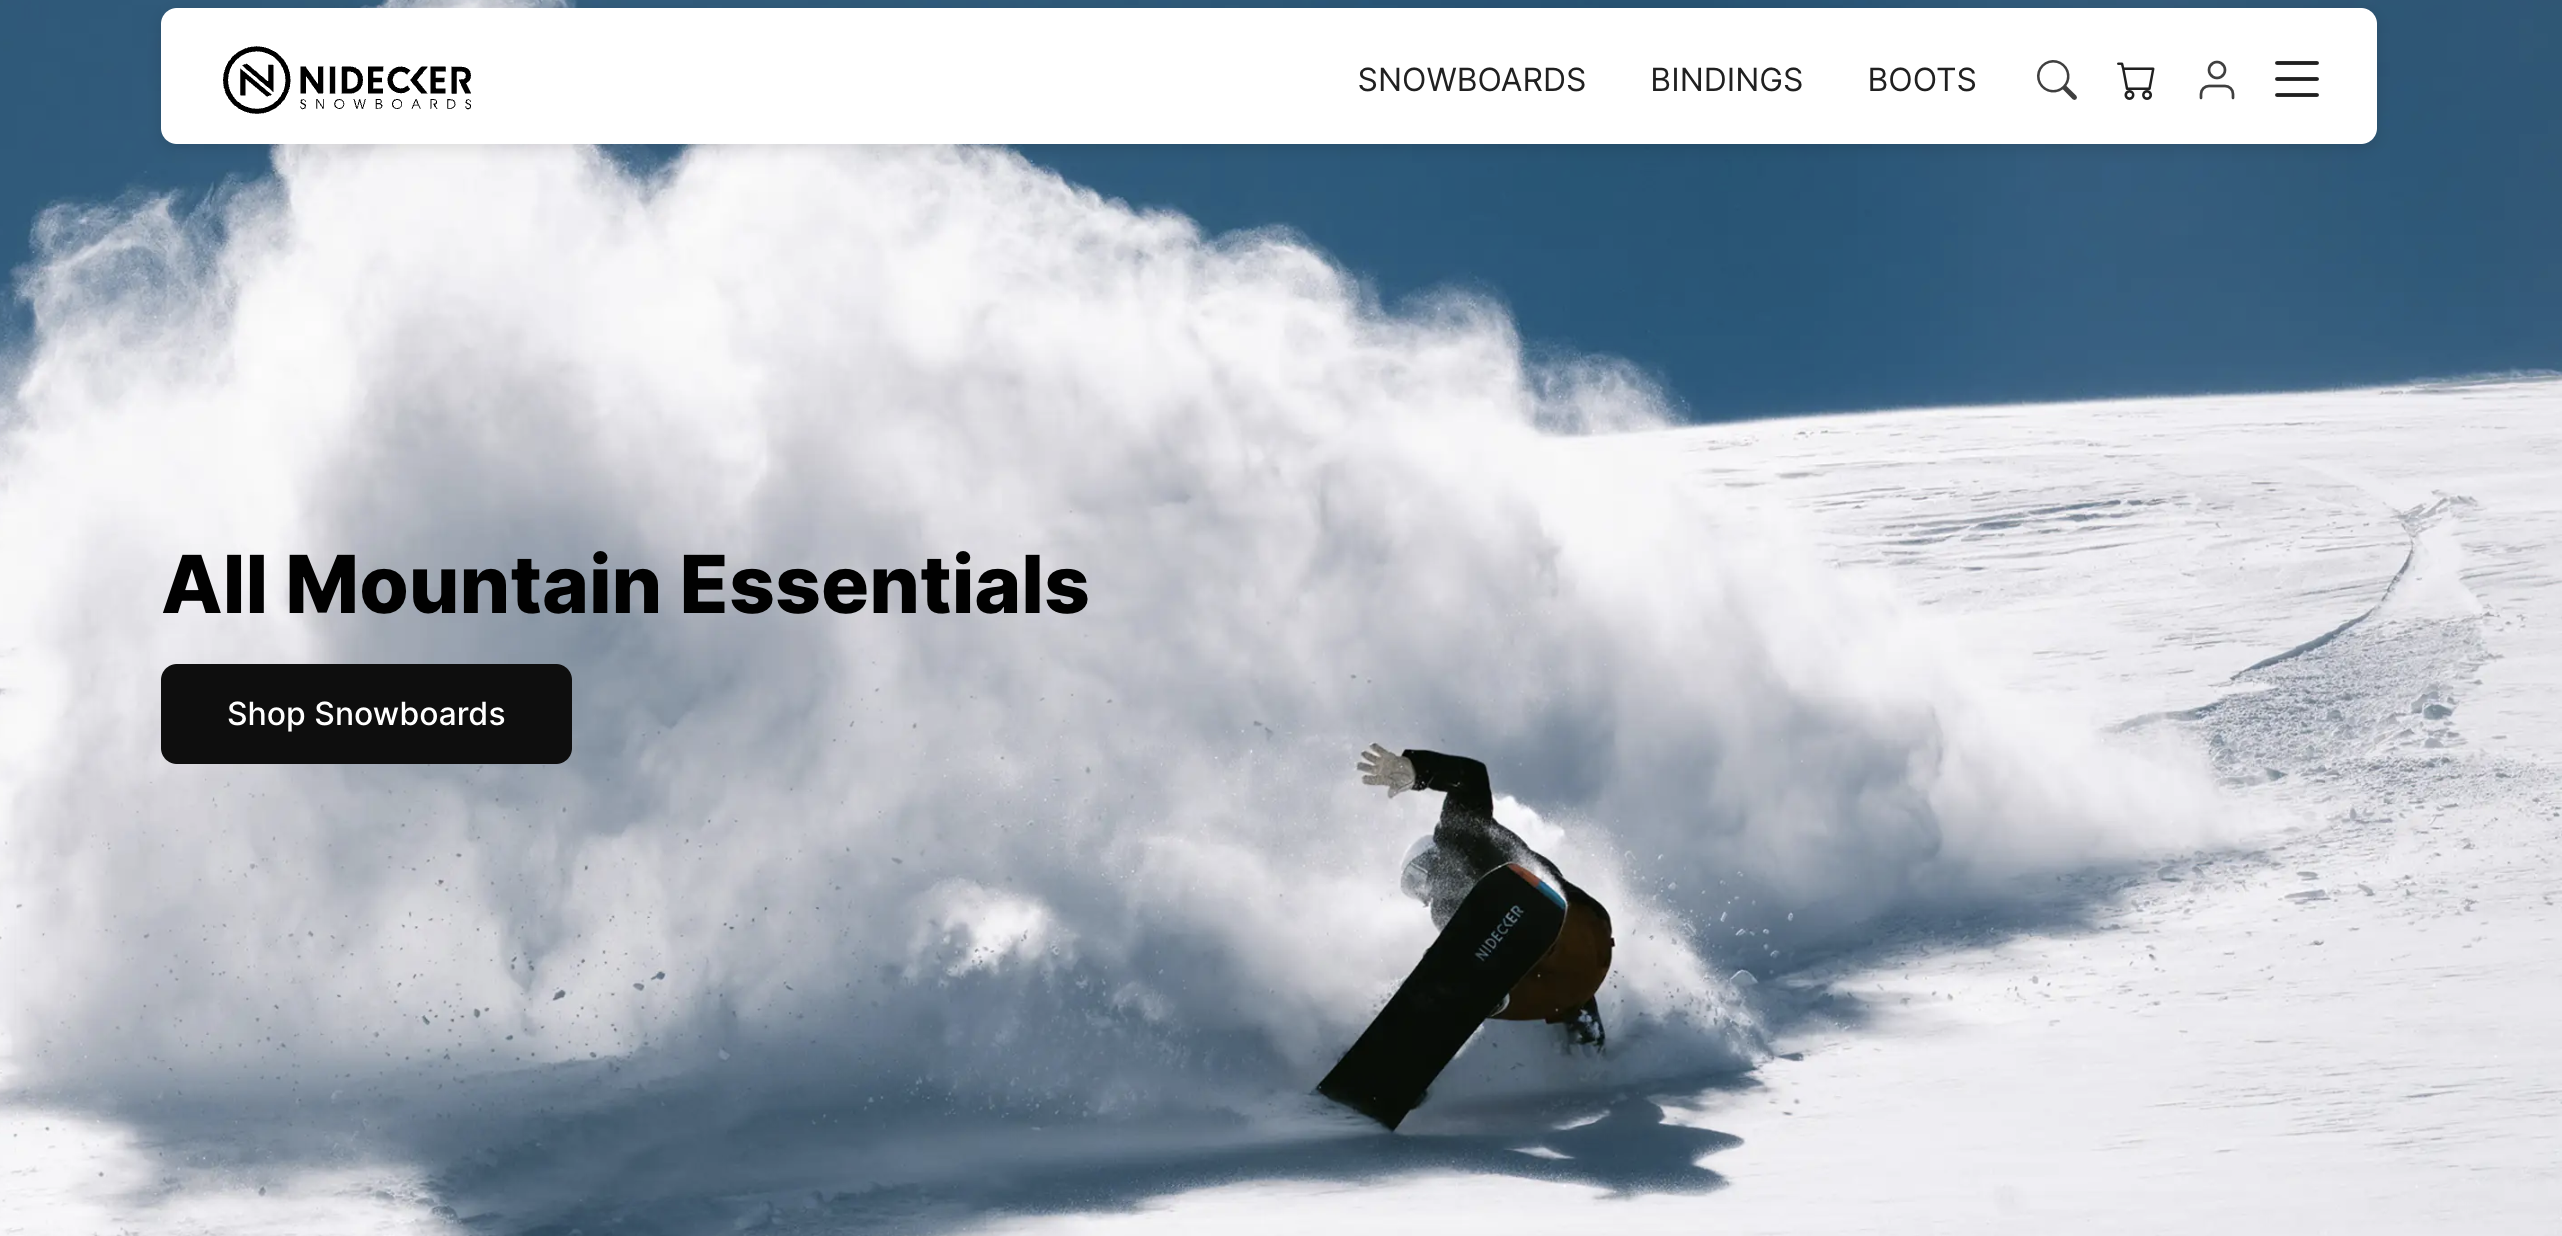 瑞士高山滑雪家族企业 Nidecker 收购美国滑板品牌公司 Sole Technology 